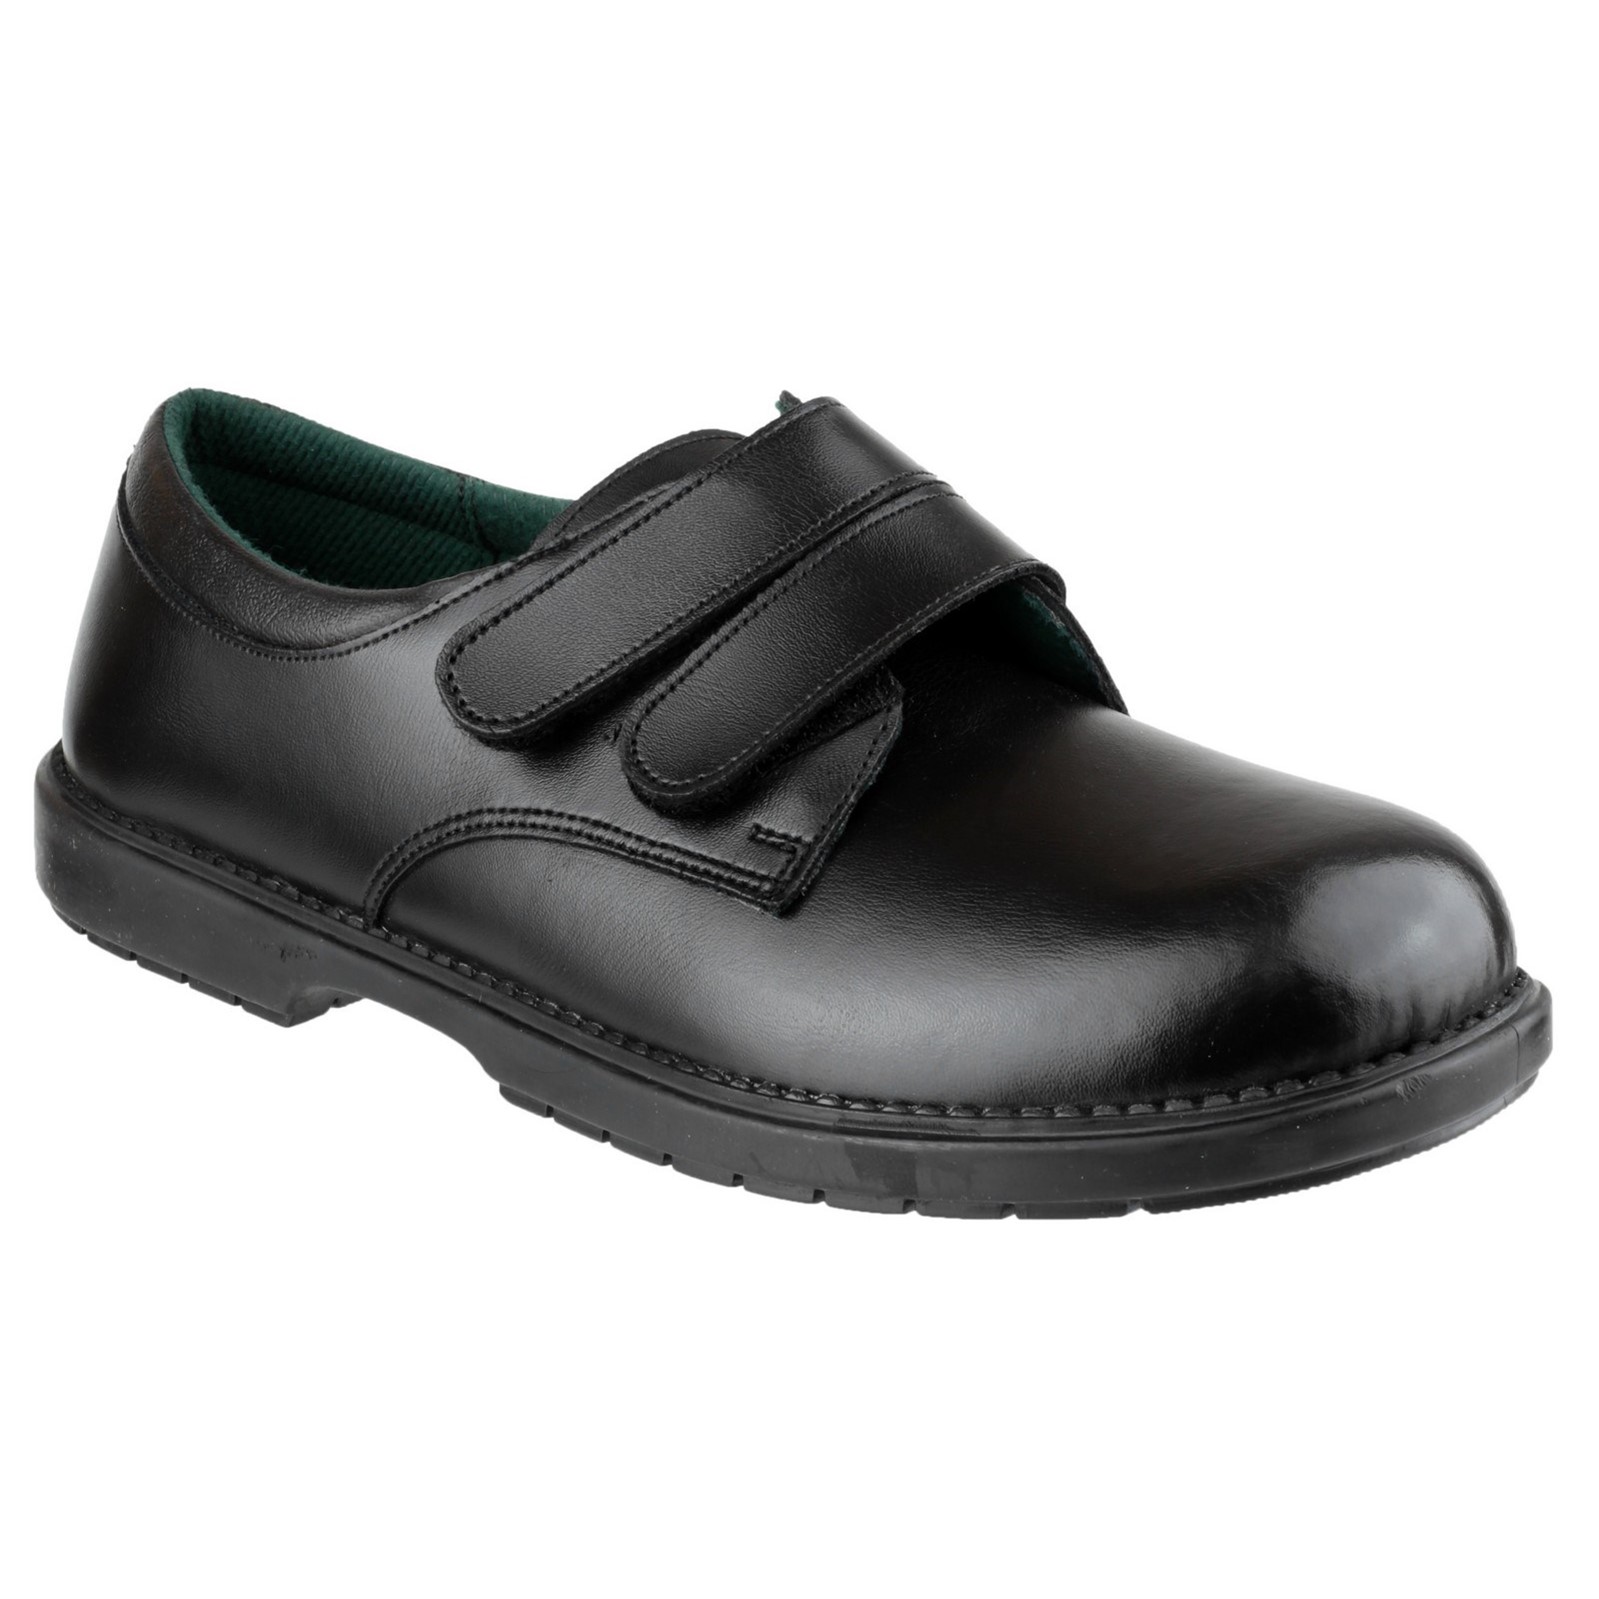 Boys Footwear - Vale Schoolwear